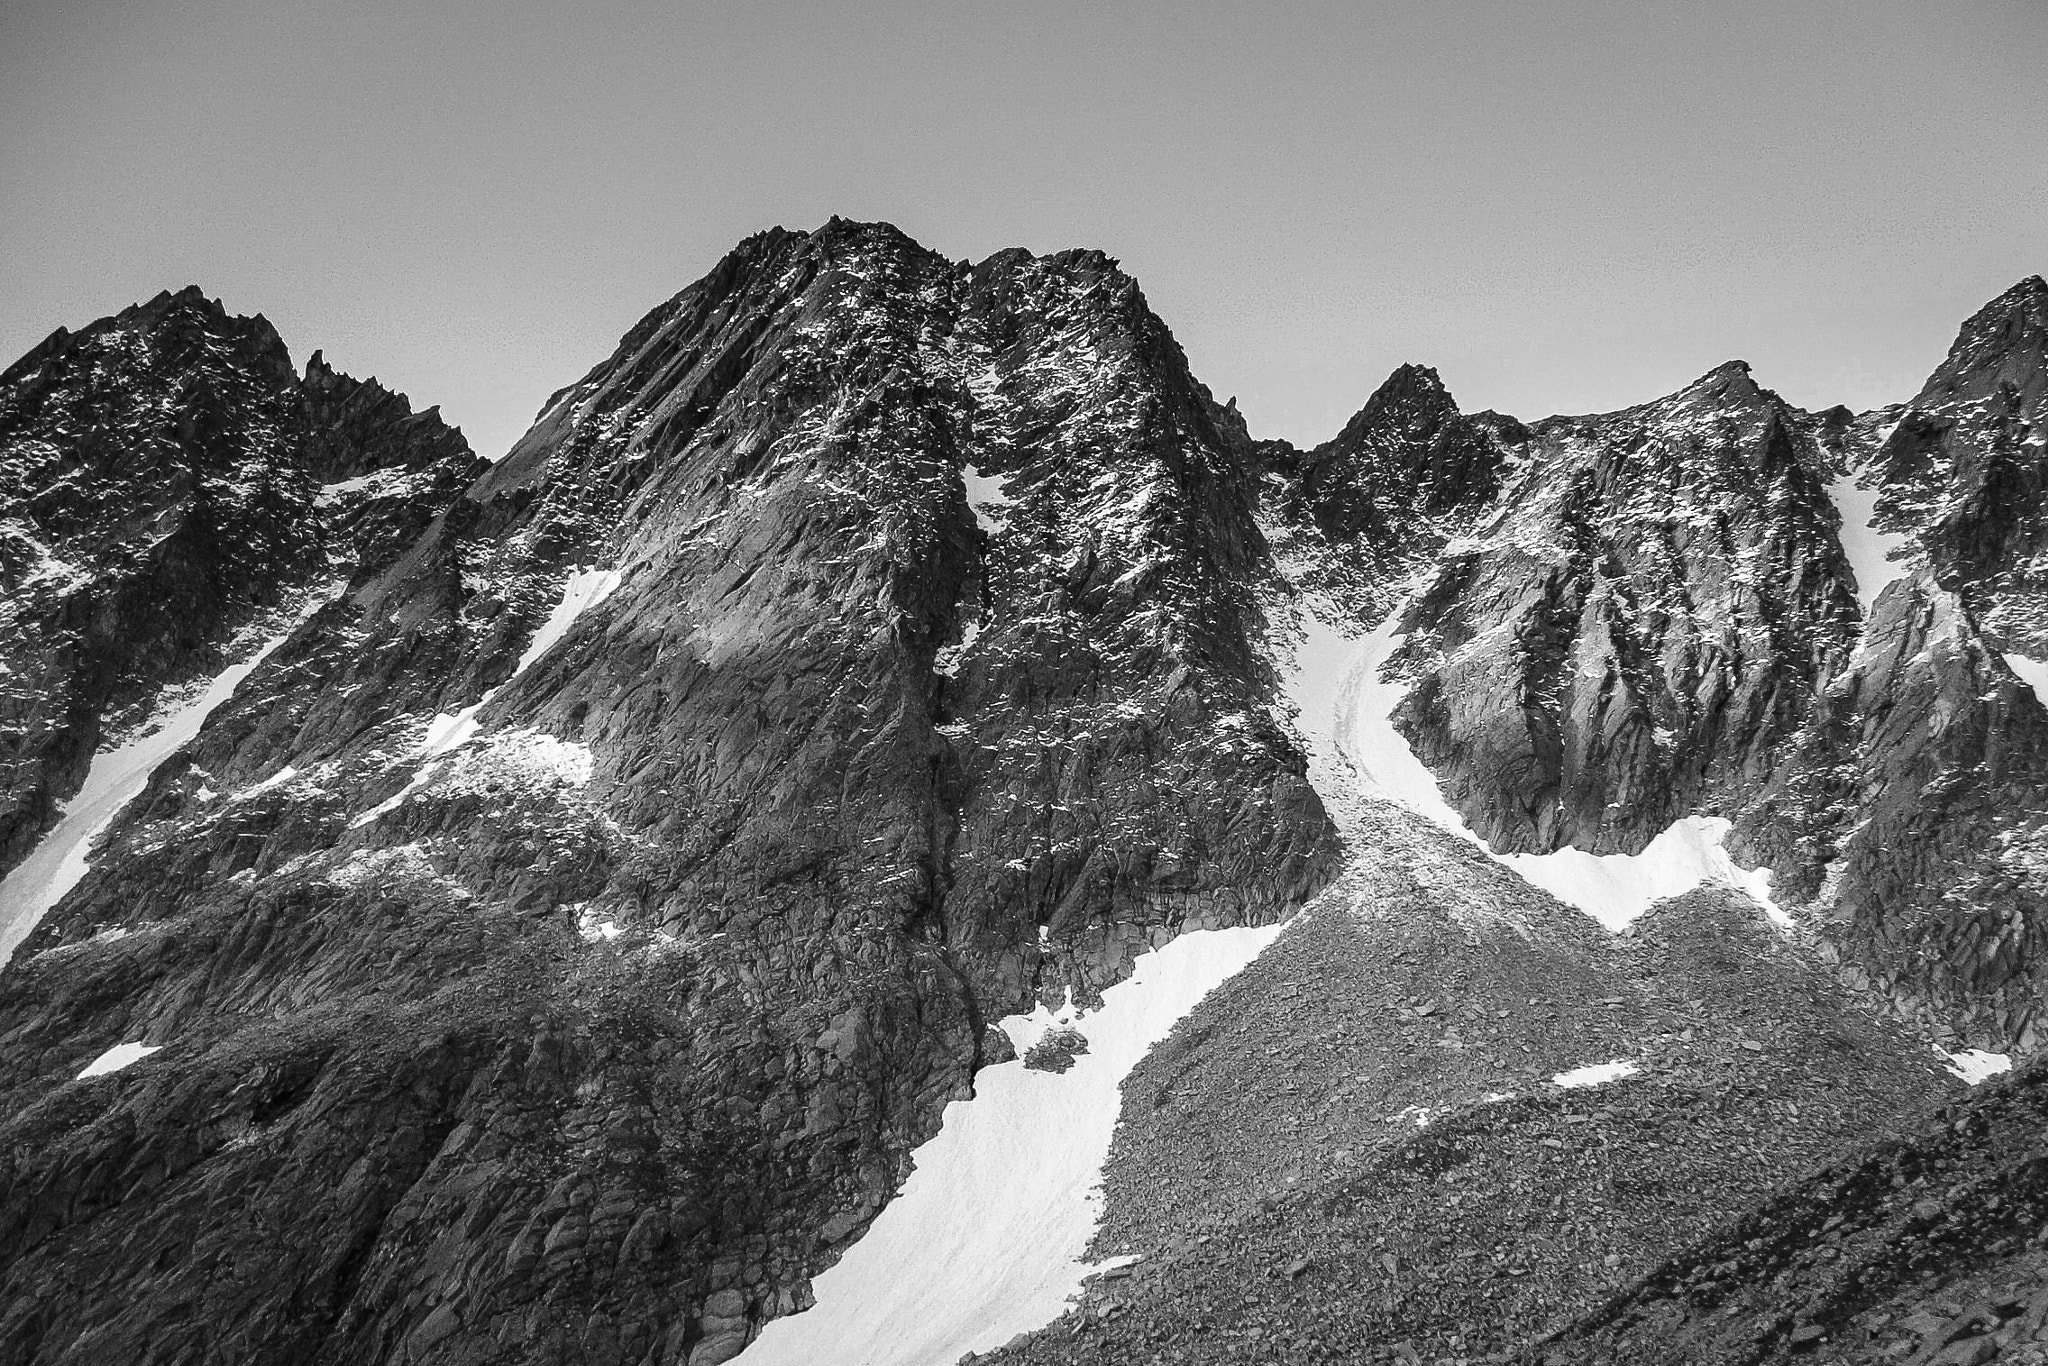 Fujifilm FinePix S3500 sample photo. My mountains - gruppo della presanella photography